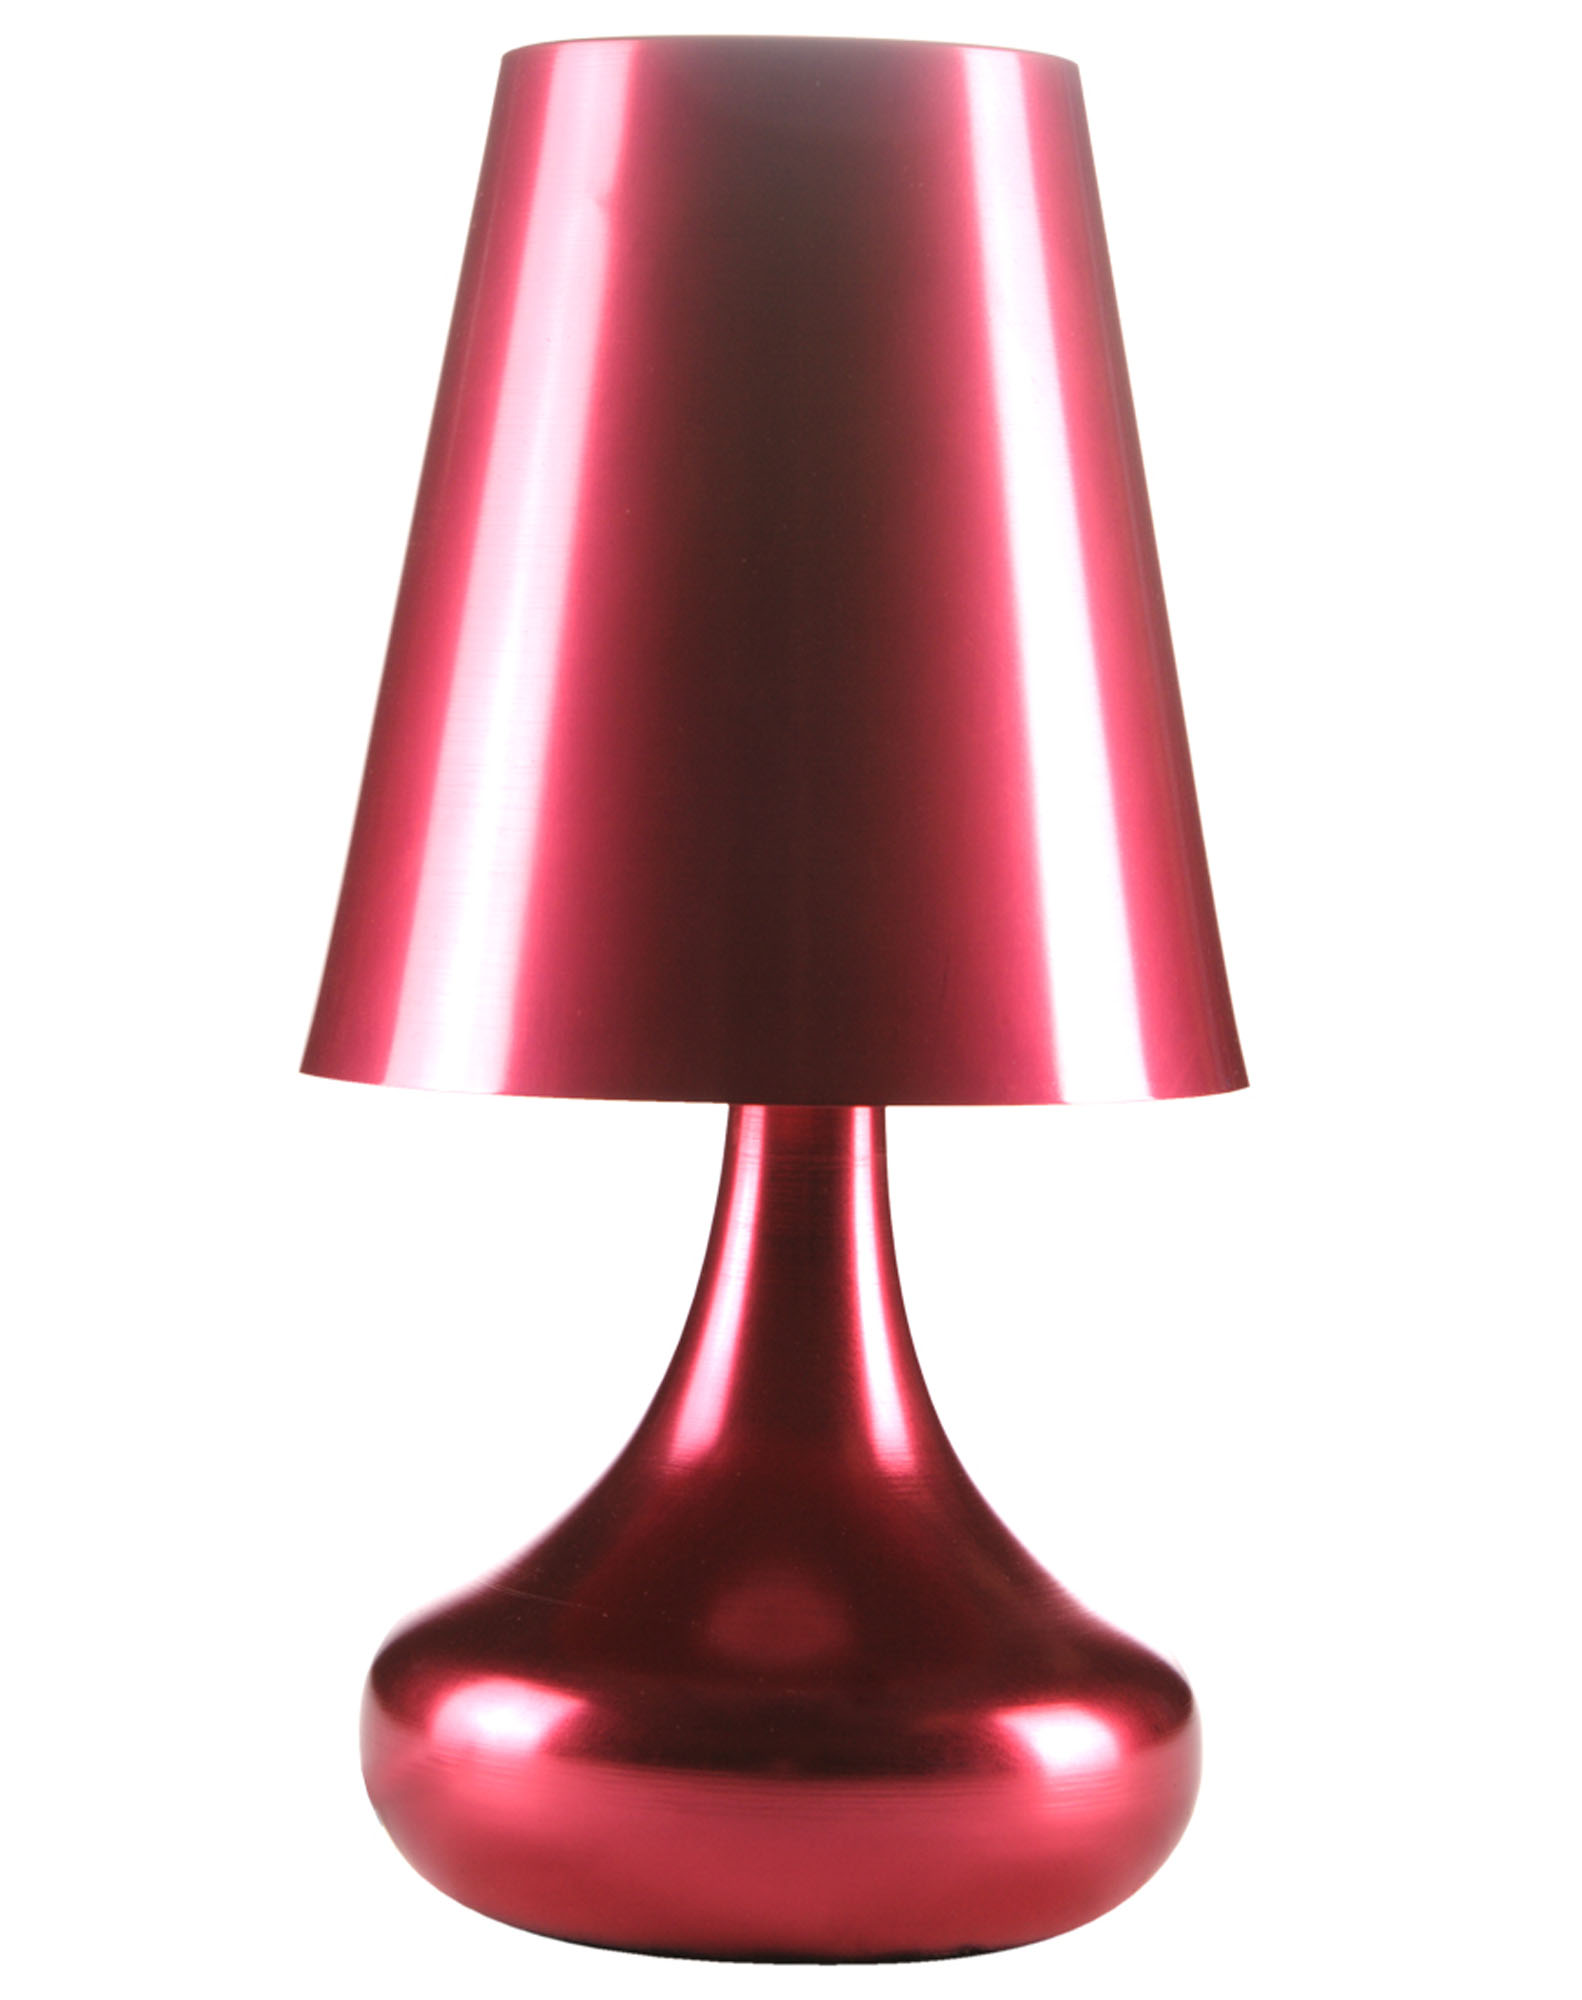 Litecraft Zany Red Aluminium Table Lamp